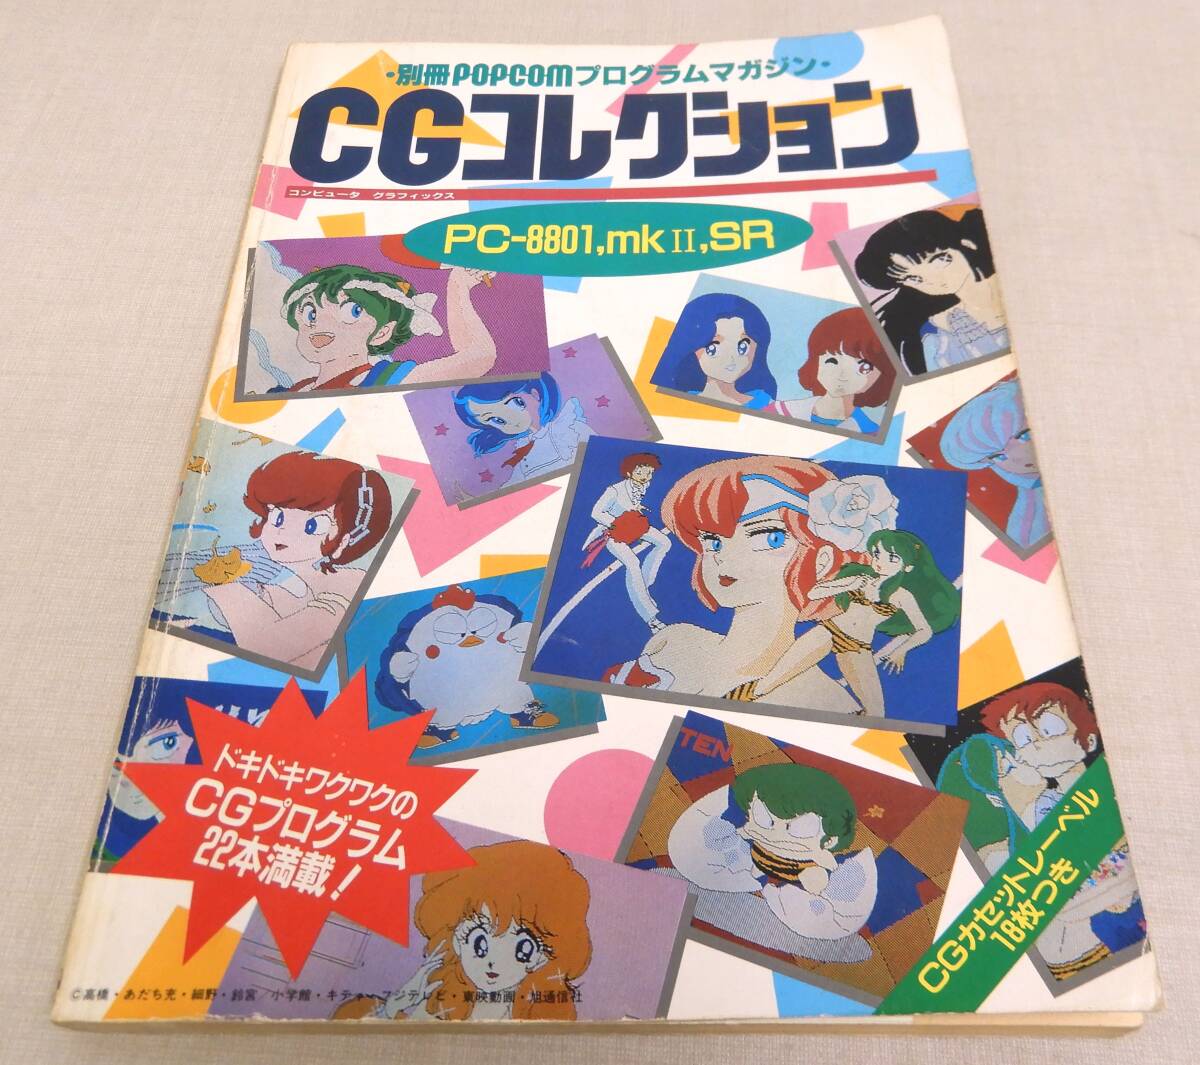 KB38/ отдельный выпуск pop com тип другой program журнал CG коллекция /PC-8801,mkII,SR/ Shogakukan Inc. 